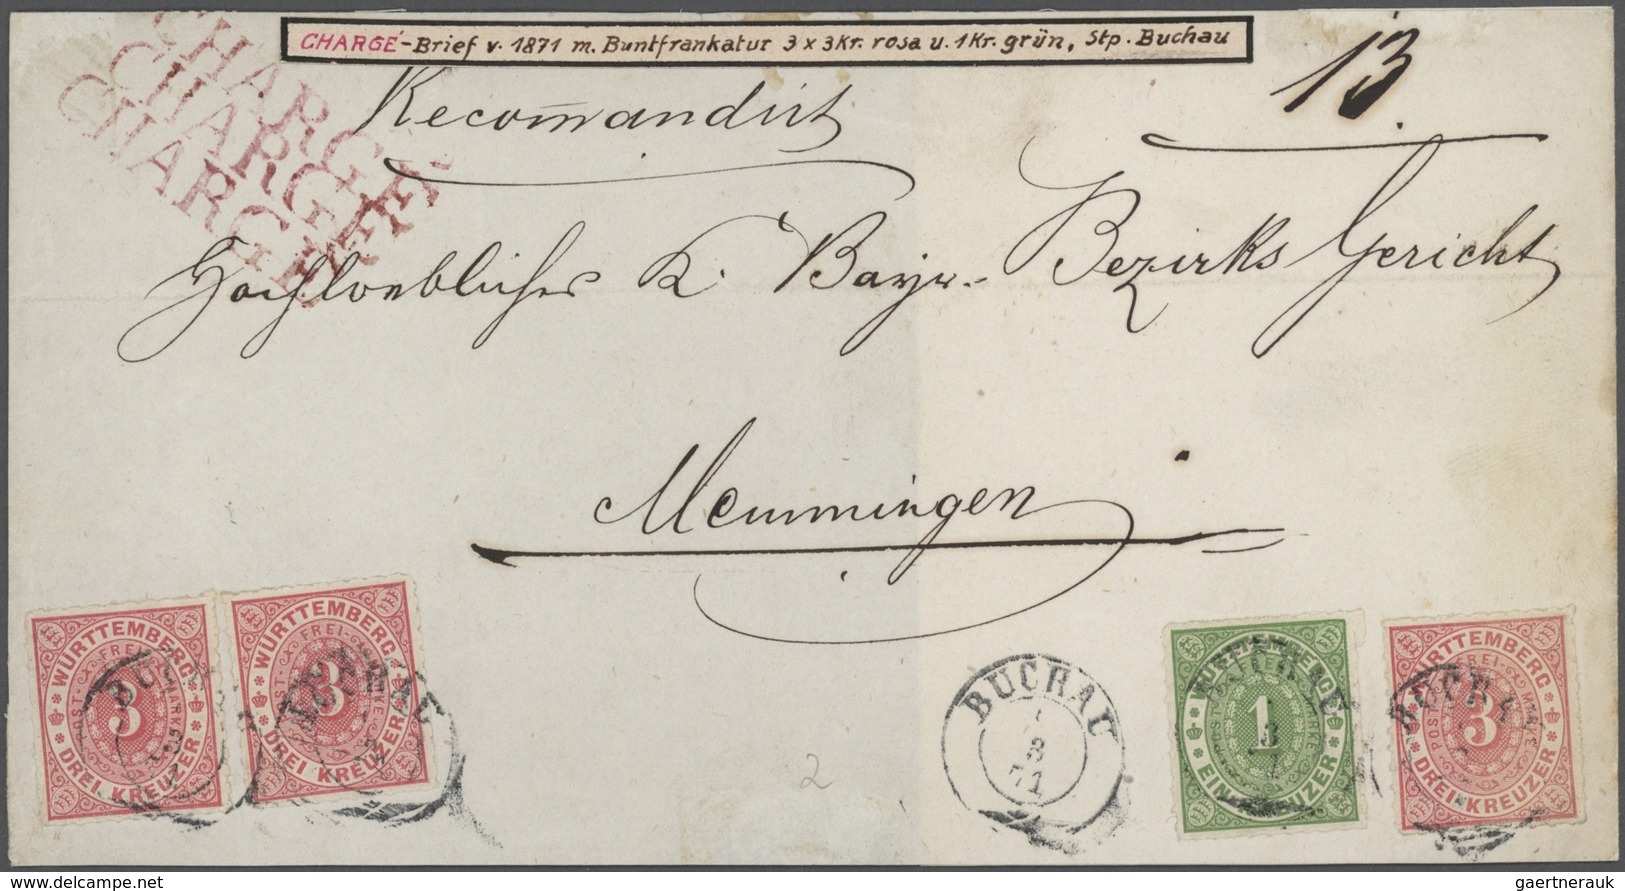 31346 Württemberg - Marken und Briefe: 1851/75 (ca.), Tolle Briefe- und Ganzsachensammlung der Kreuzerzeit